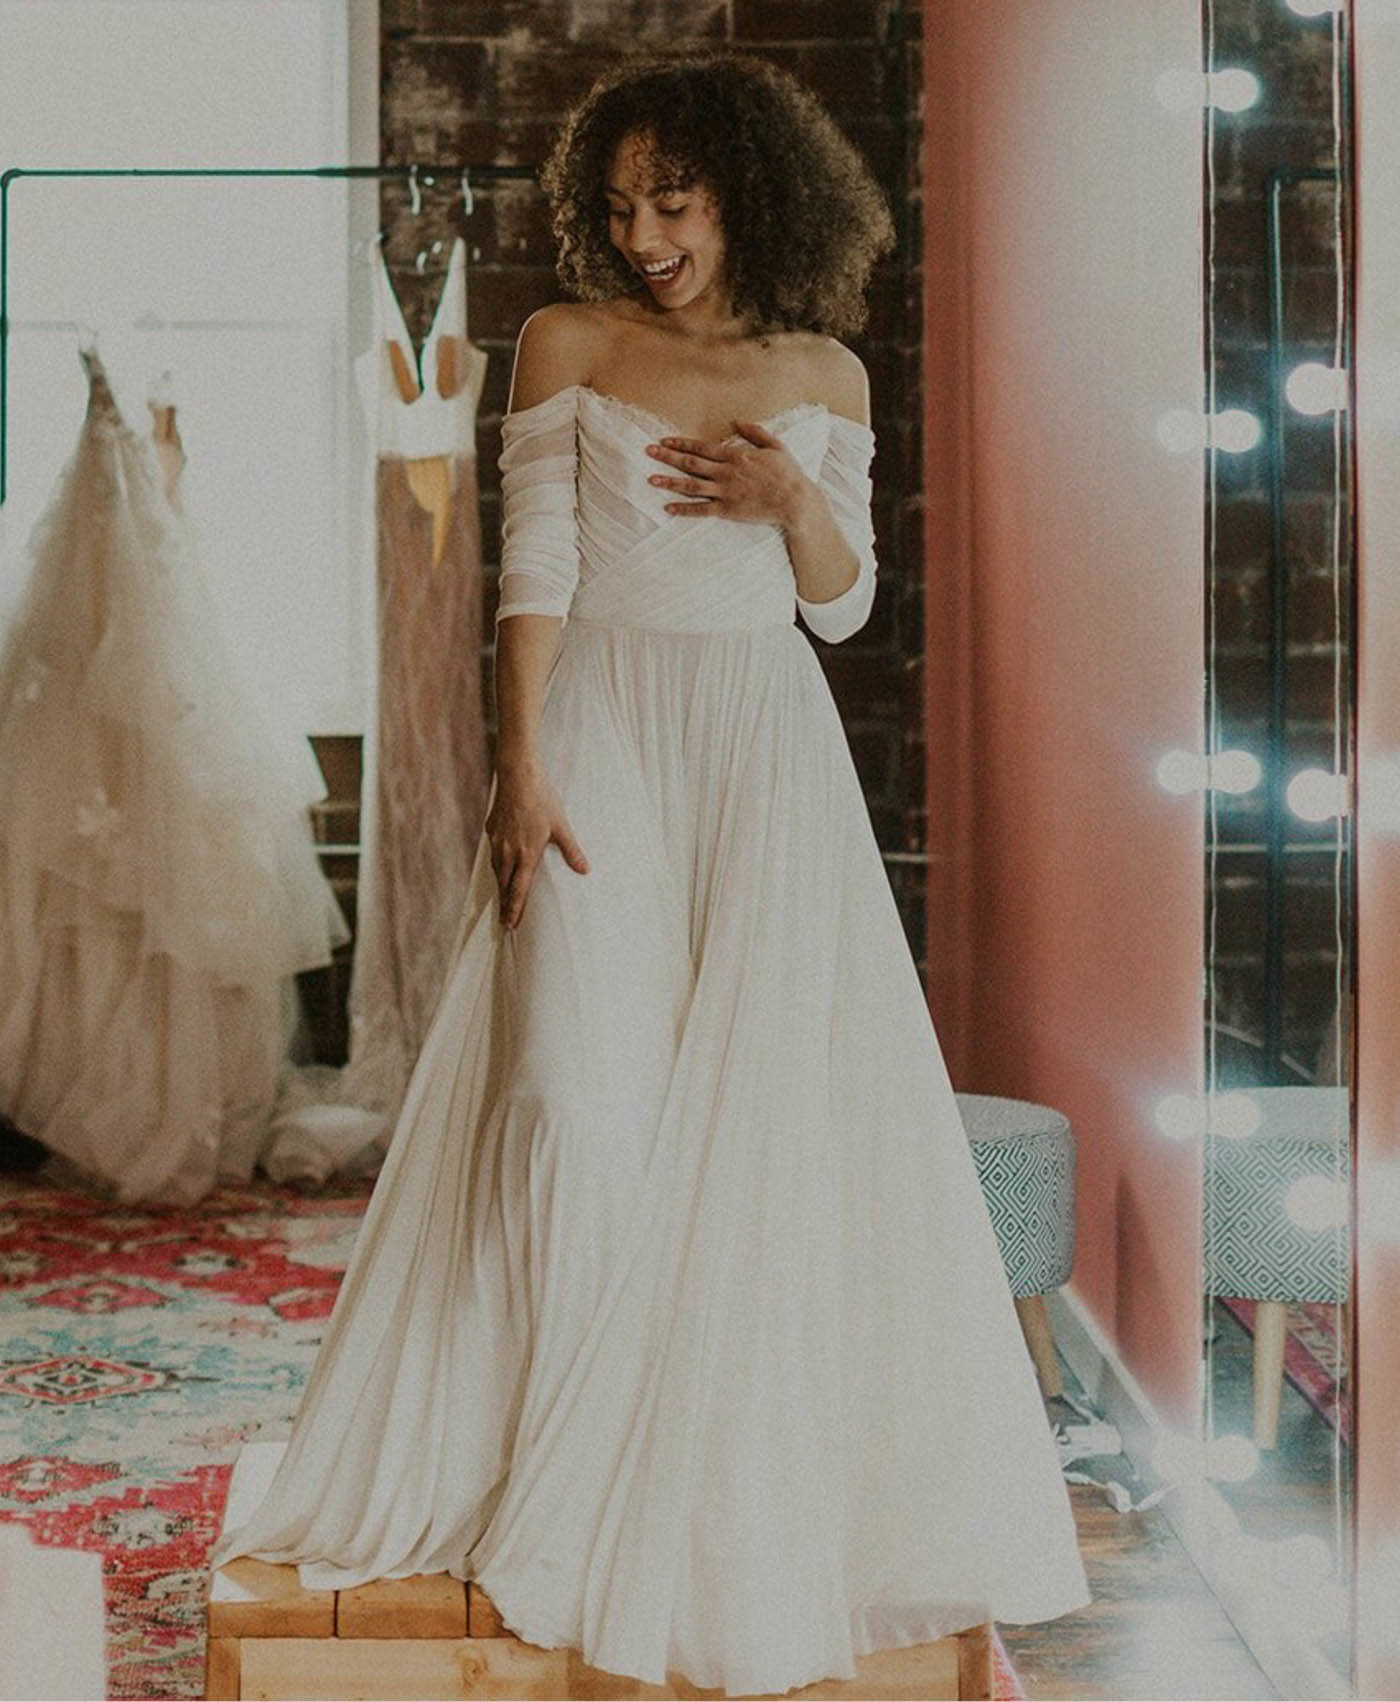 Model wearing a white bridal dress